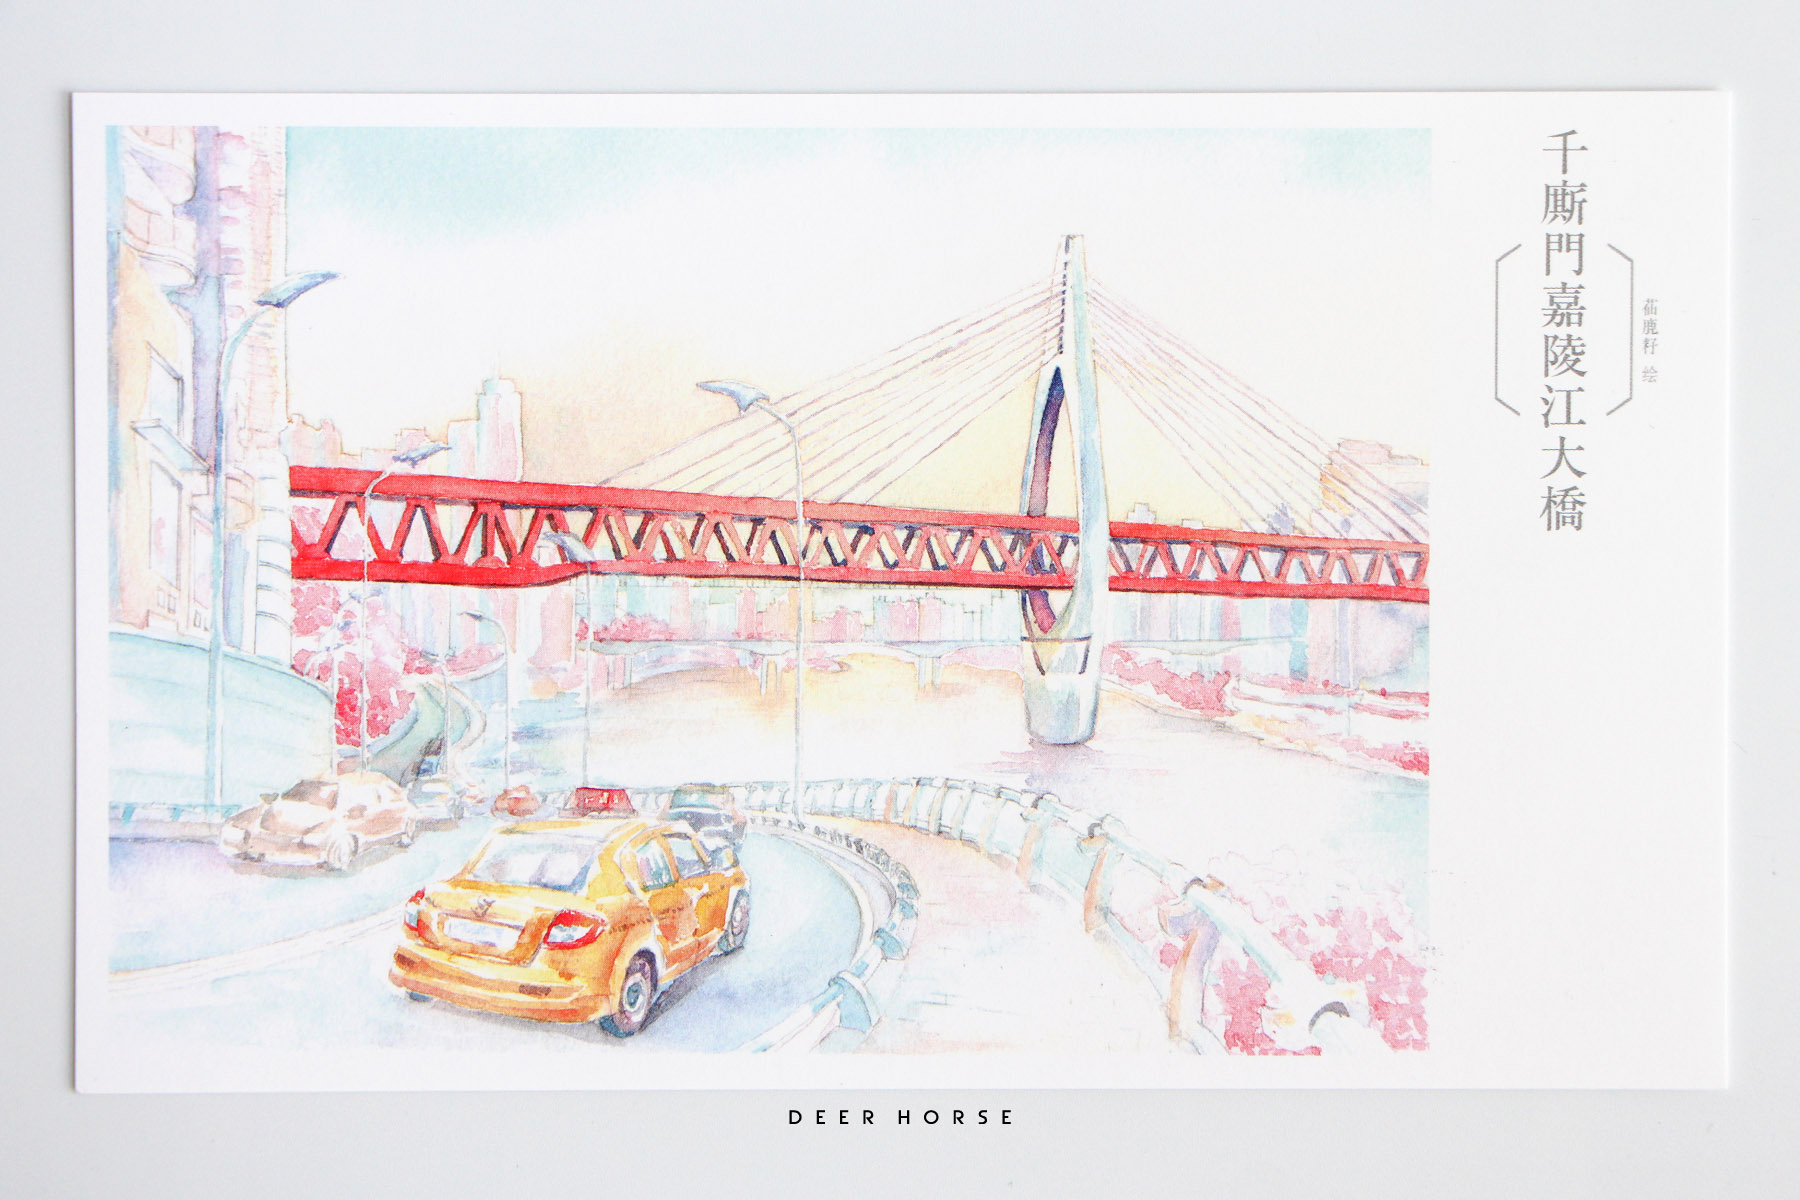 千厮门大桥绘画图片